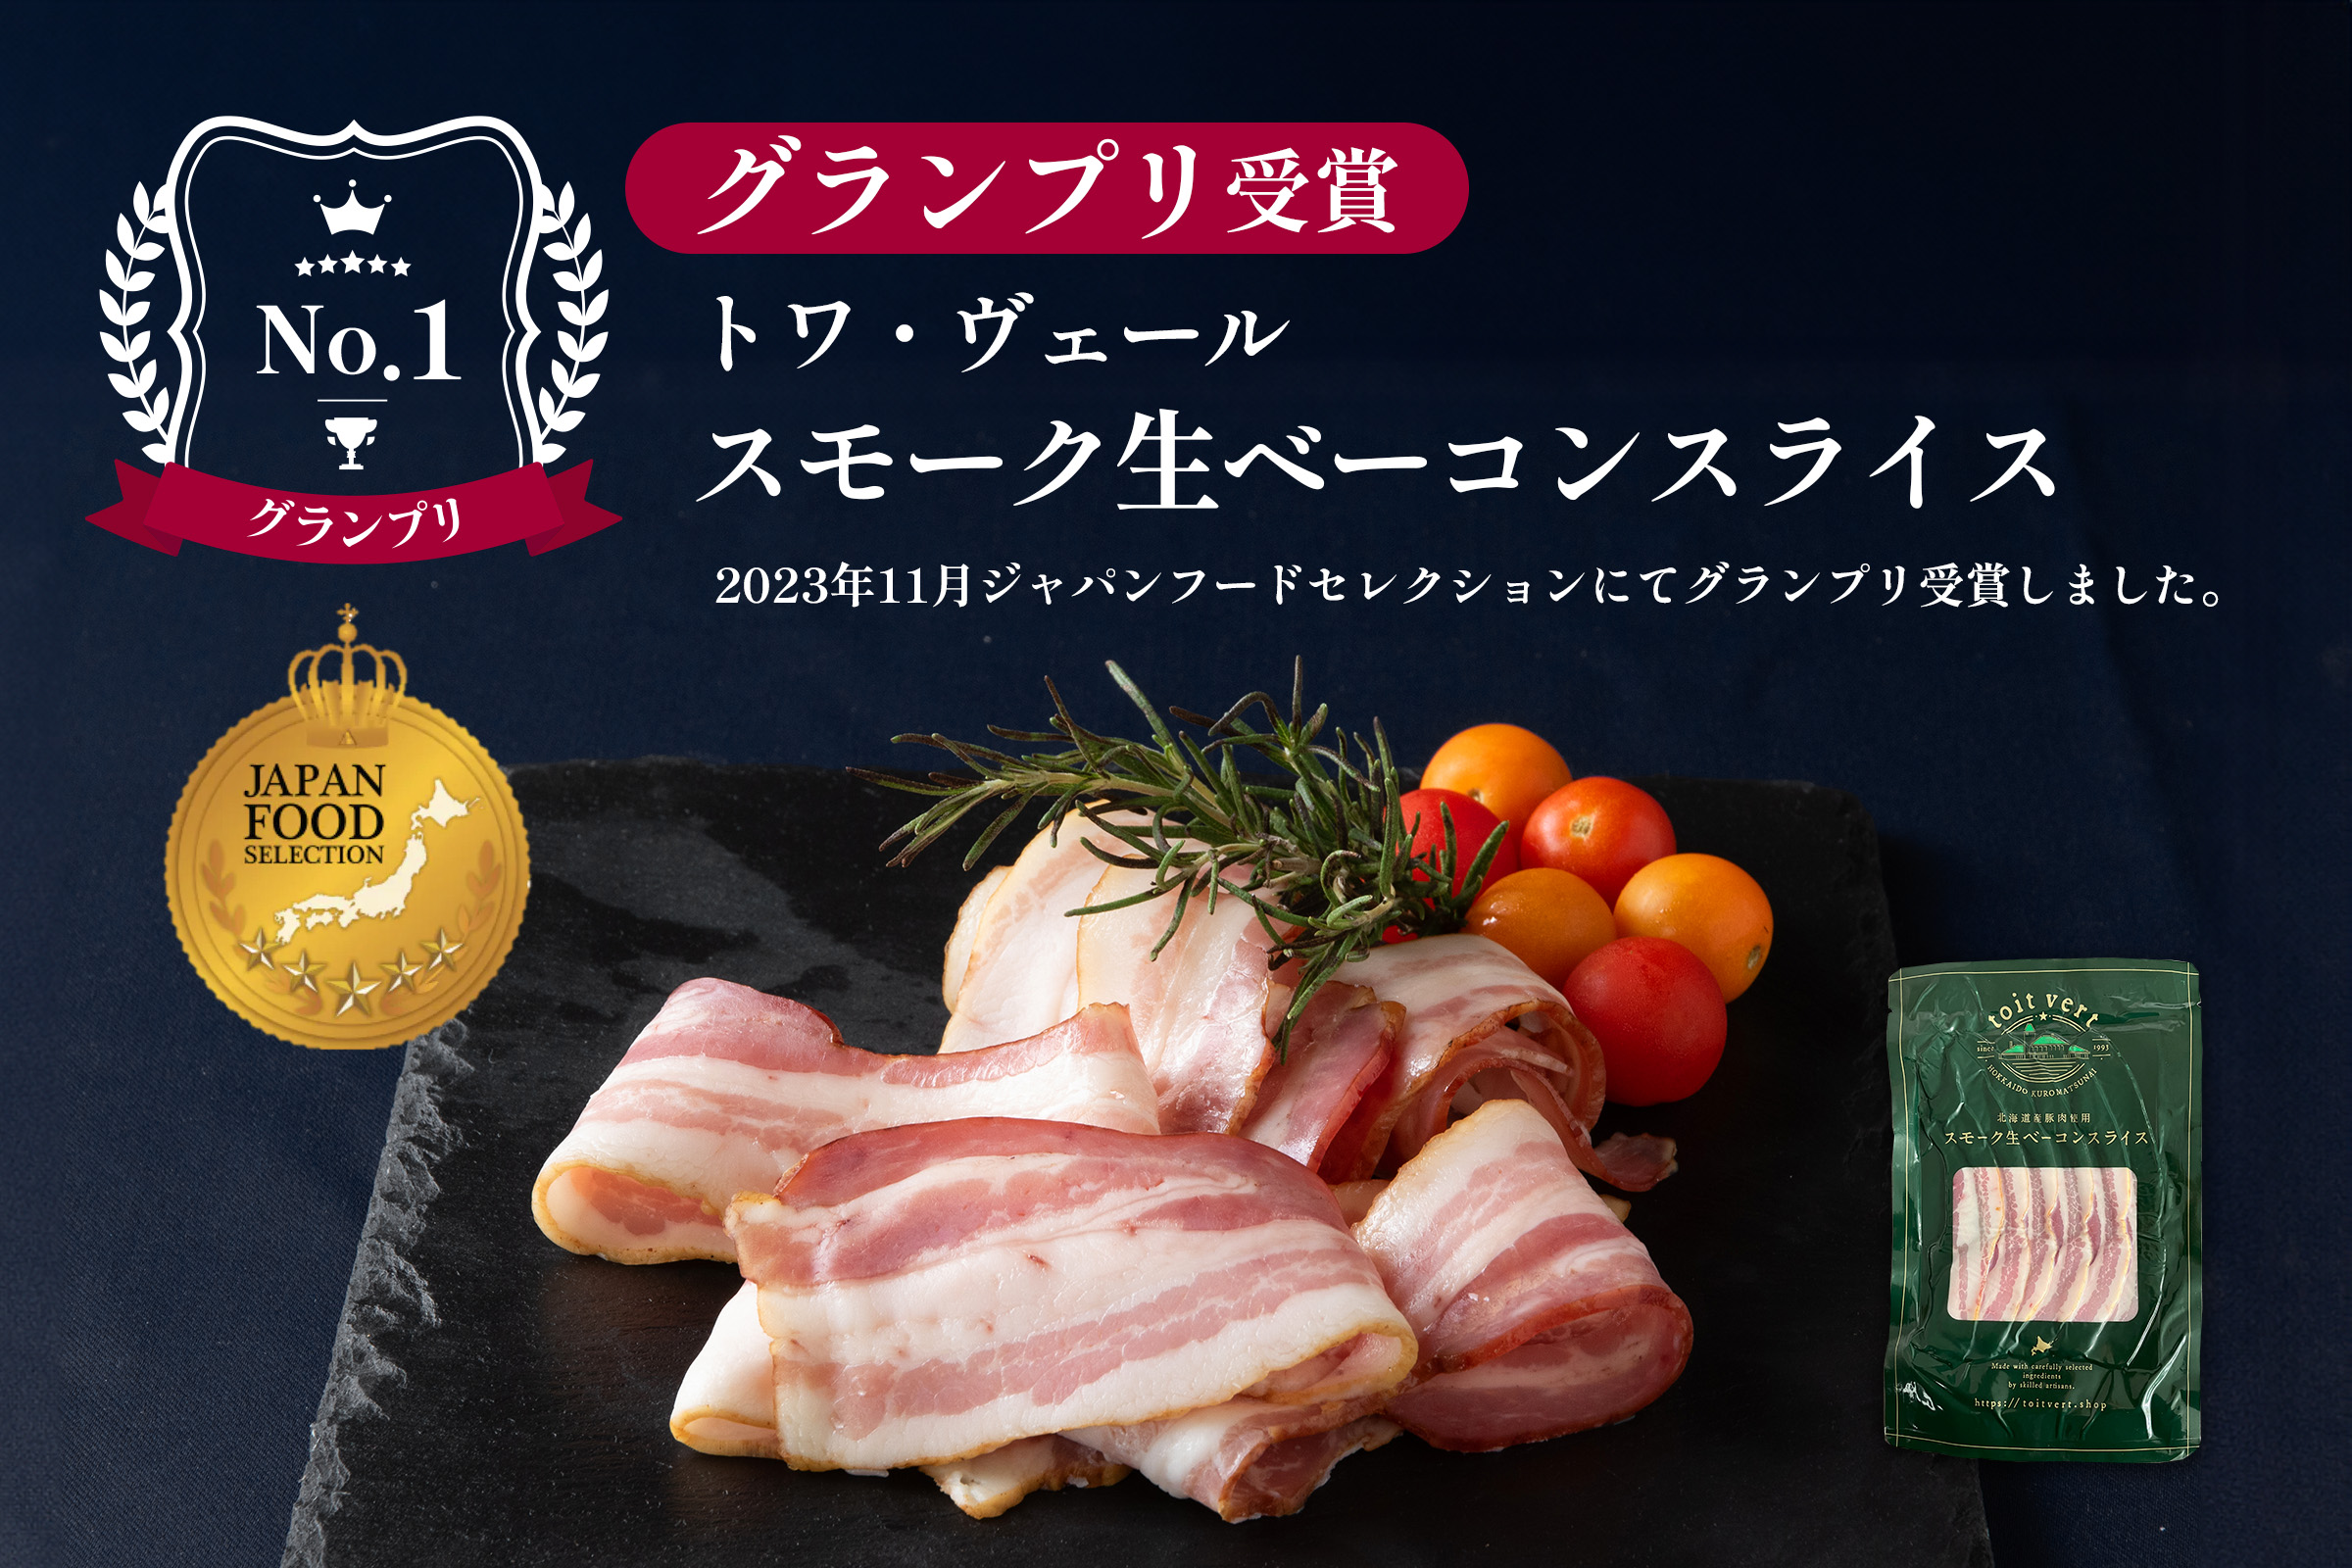 「スモーク生ベーコンスライス」が ジャパン・フード・セレクションにて最高の評価を獲得！